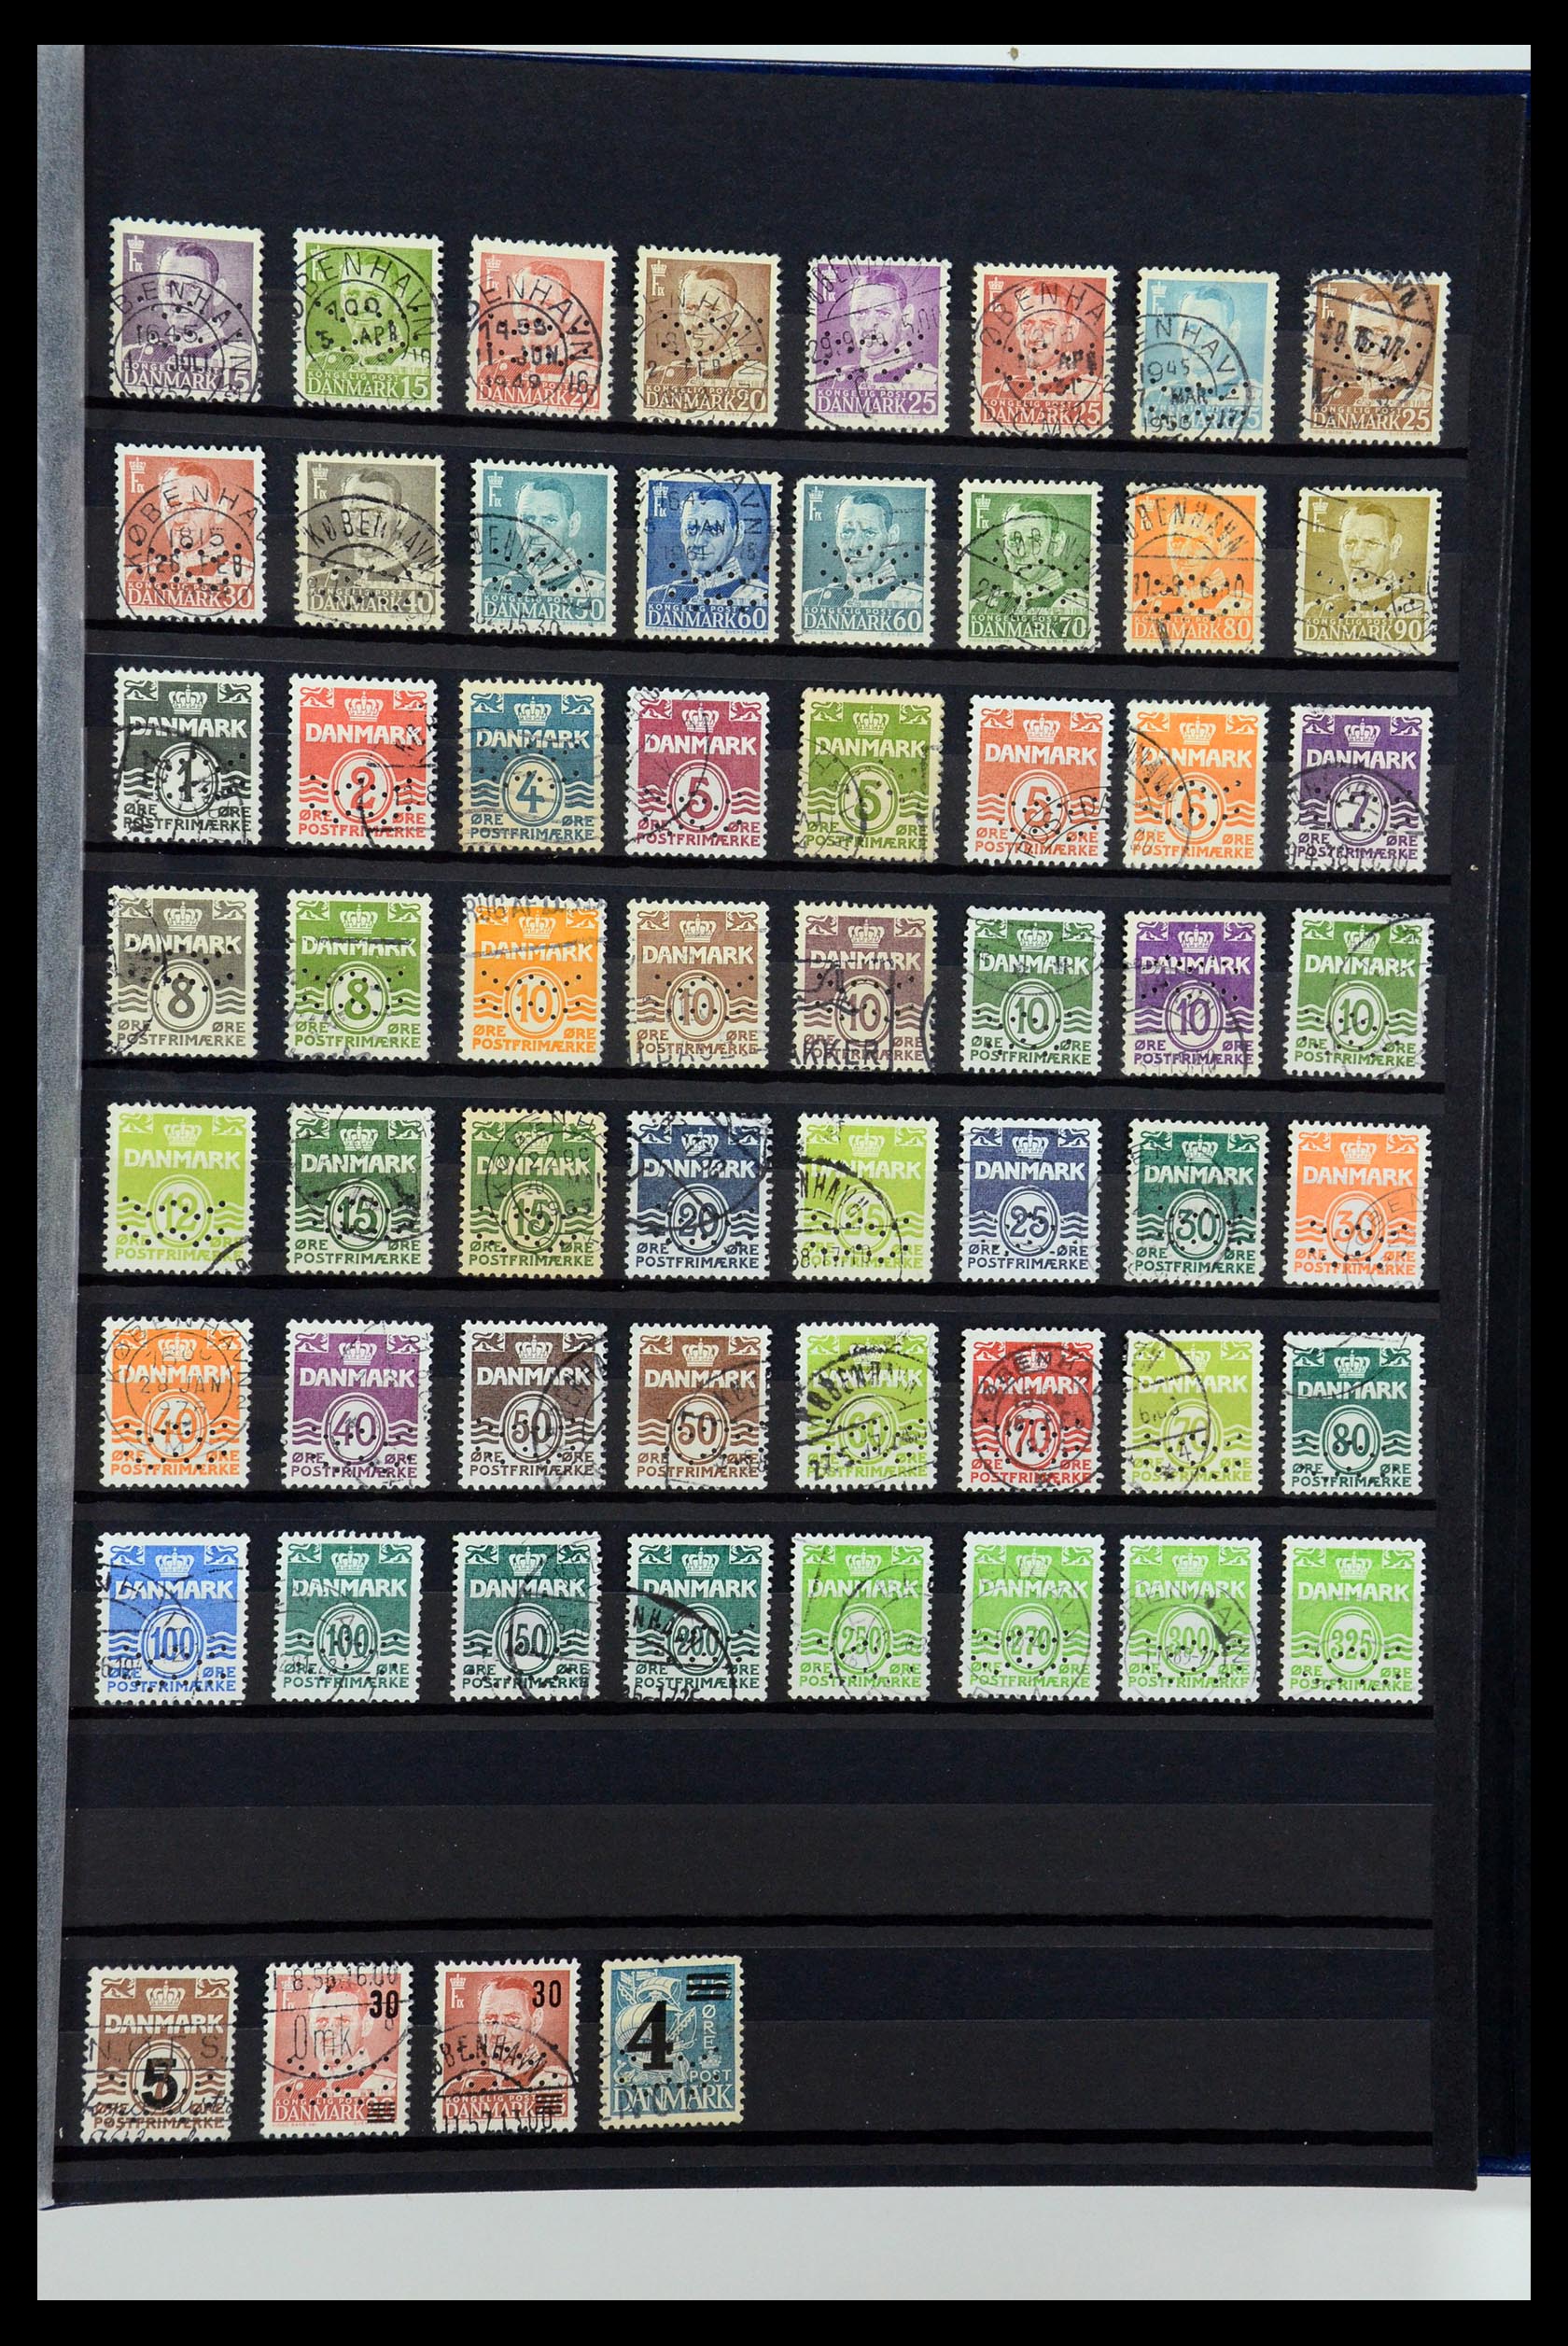 36396 231 - Postzegelverzameling 36396 Denemarken perfins.